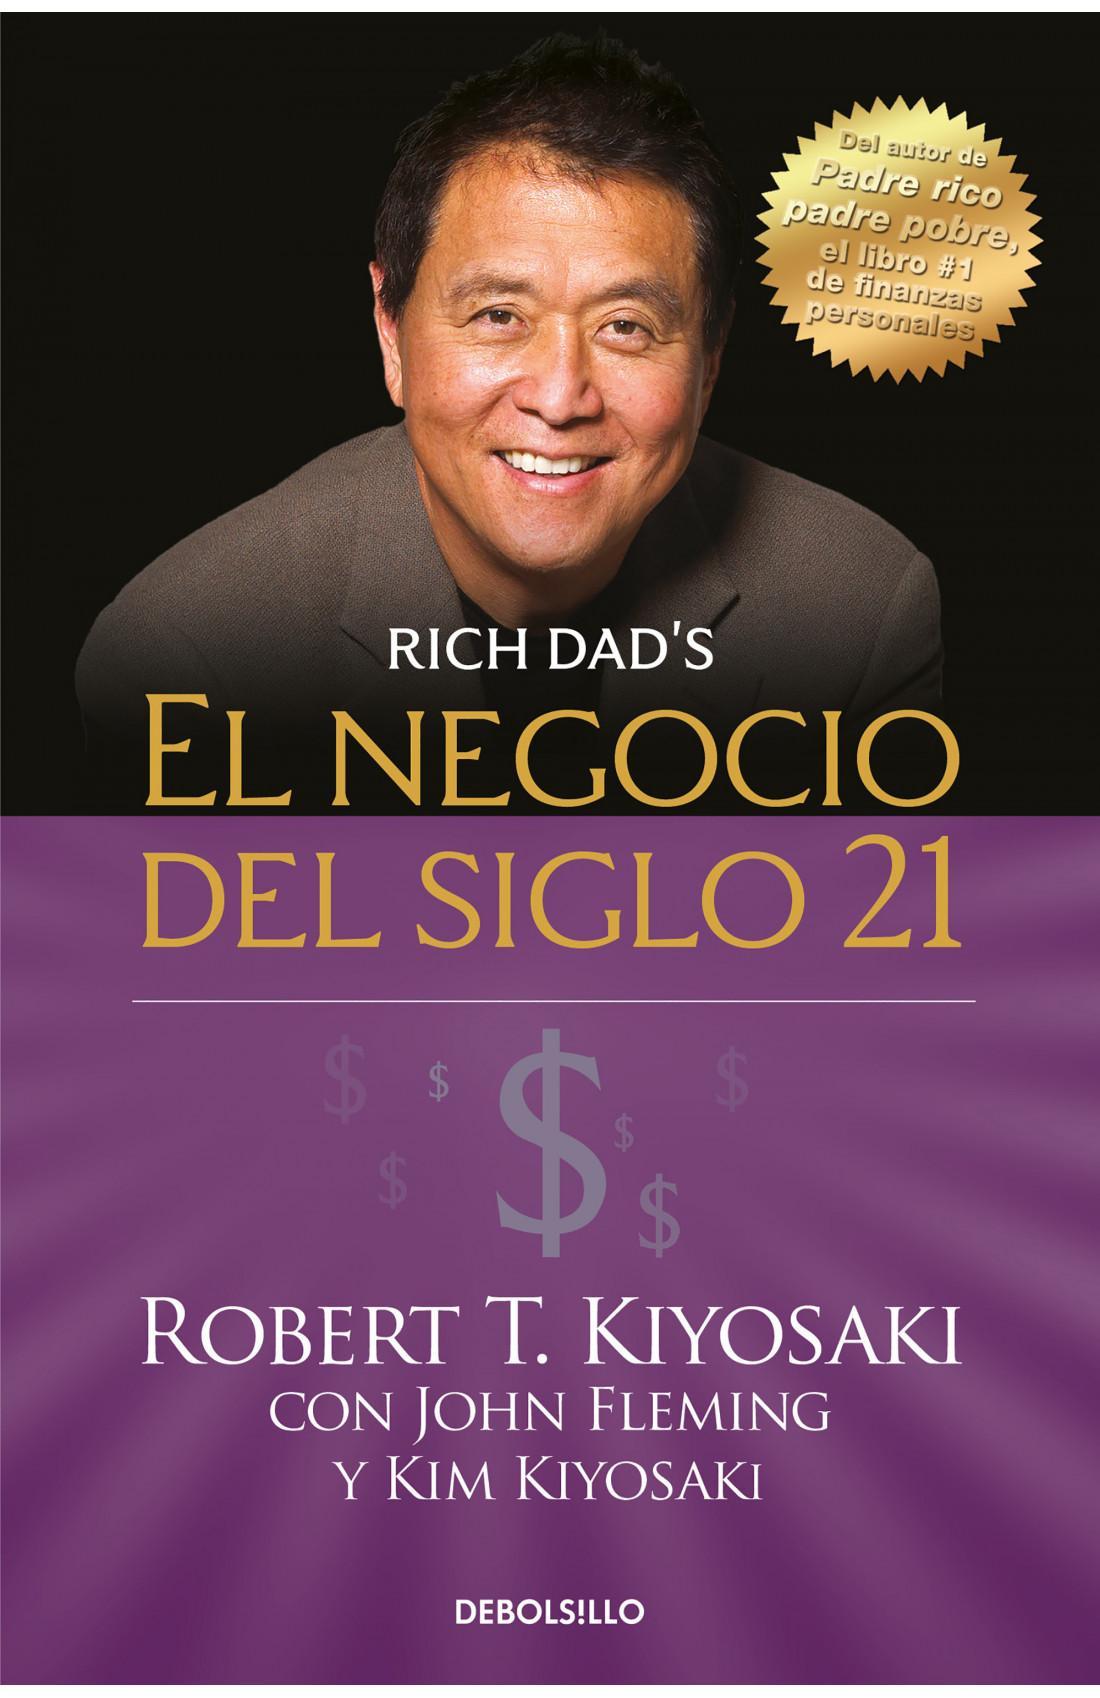 El Negocio del Siglo 21 - Robert T. Kiyosaki